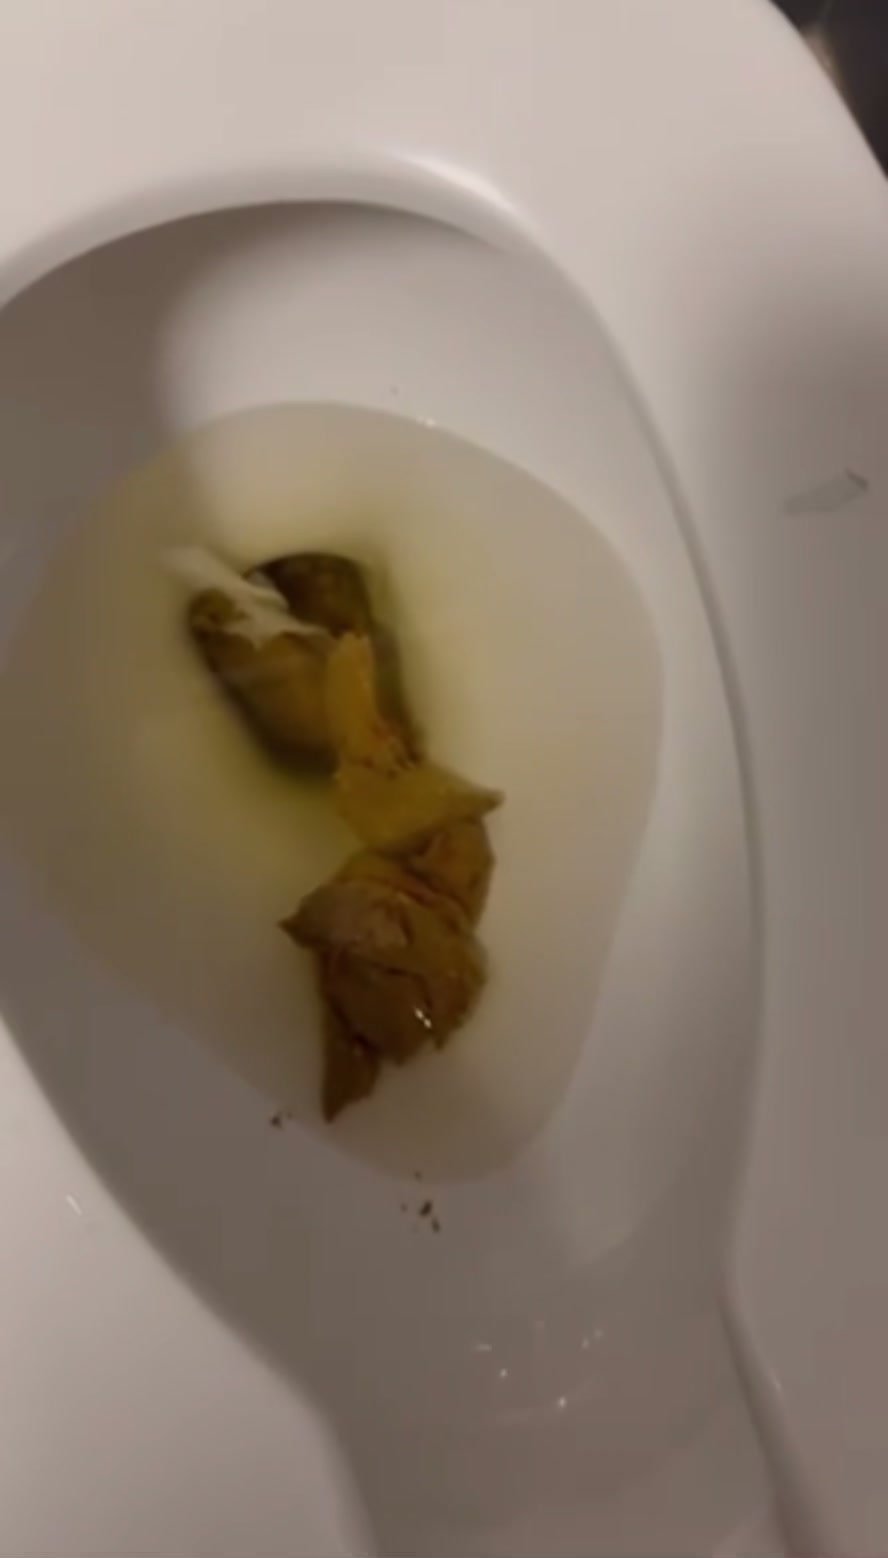 Morning poop - video 118